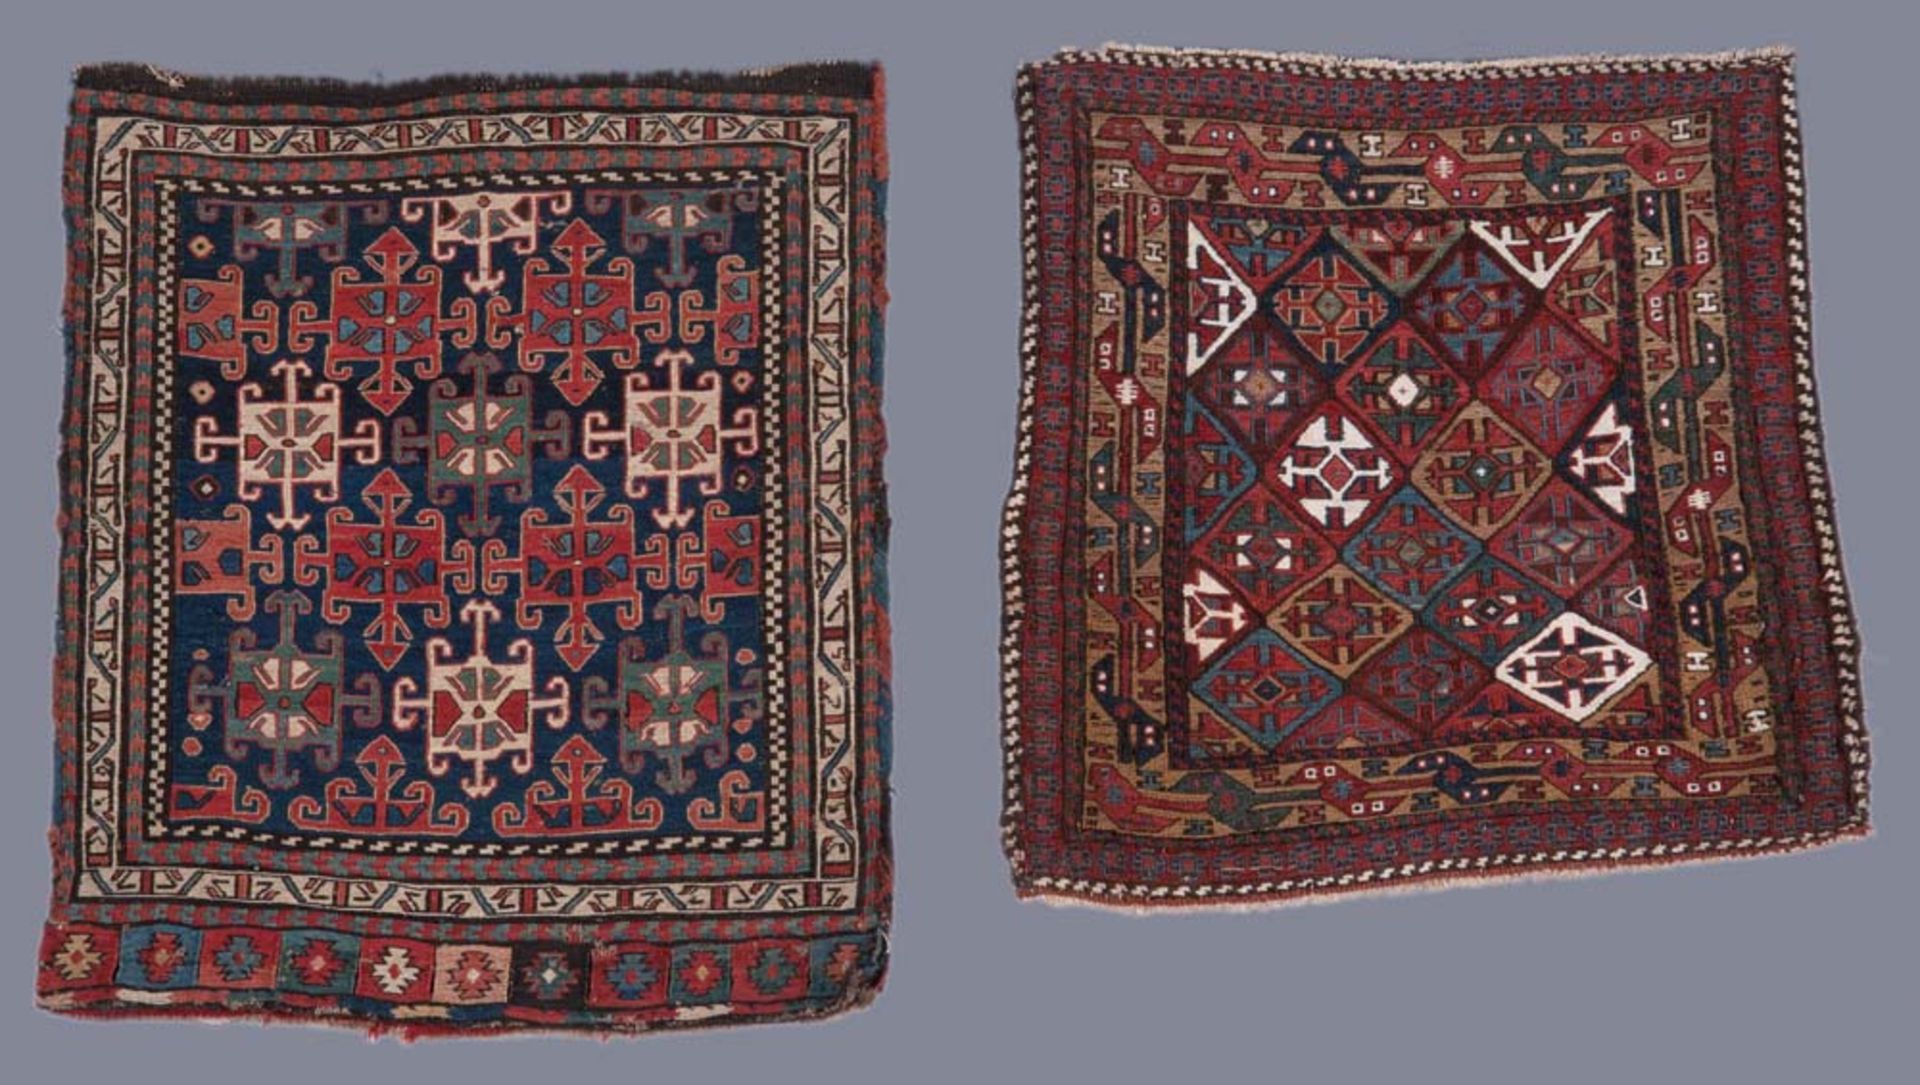 Schiraz-Tasche, 61 x 53 cm; und Jomud-Wandbehang, 52 x 52 cm. Mit Zertifikat von Bausback - Das